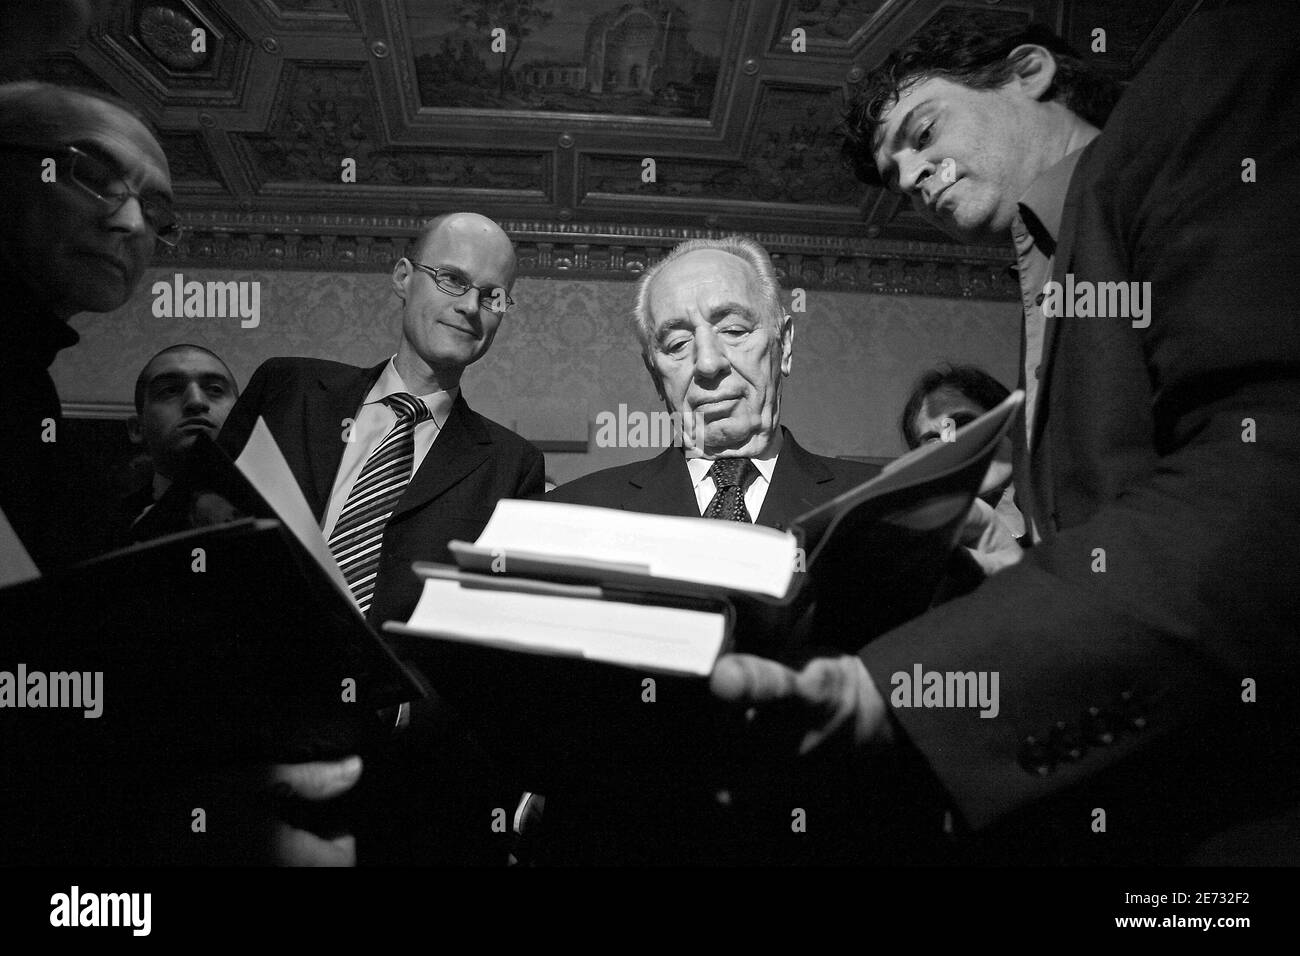 "Der israelische Vizepremierminister Shimon Peres signiert Kopien von "Shimon Peres: The Biography", geschrieben von Michael Bar-Zohar, während eines Cocktail-Empfangs für die US-Veröffentlichung des Buches am 26. Februar 2007 im französischen Konsulat in New York City, USA. Foto von Gerald Holubowicz/ABACAPRESS.COM' Stockfoto